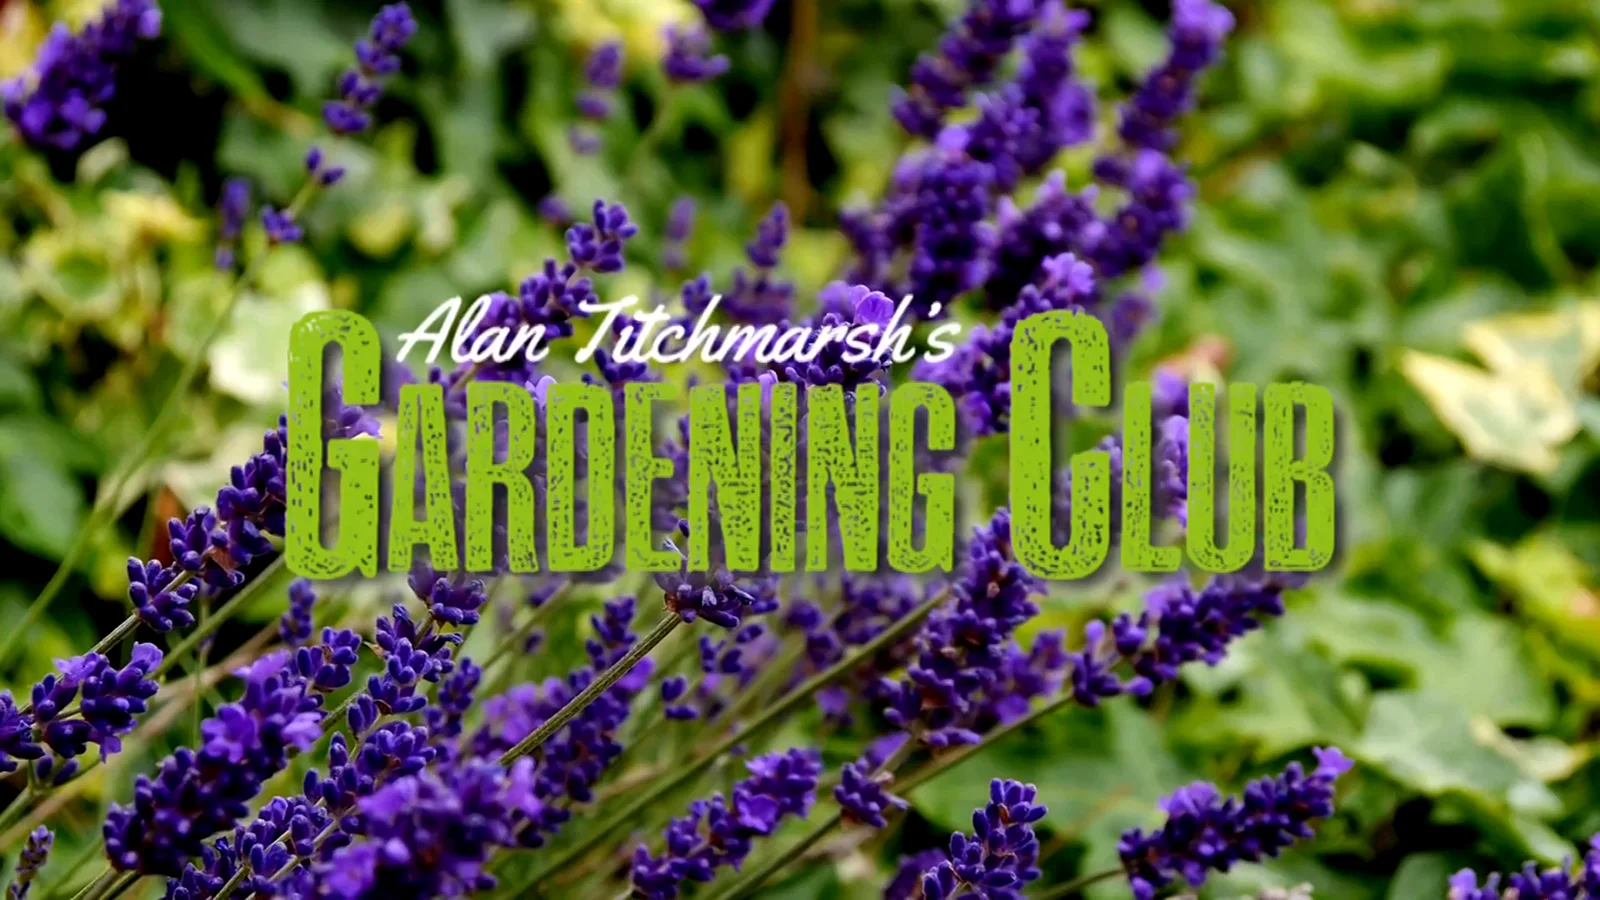 Gardening Club episode 4